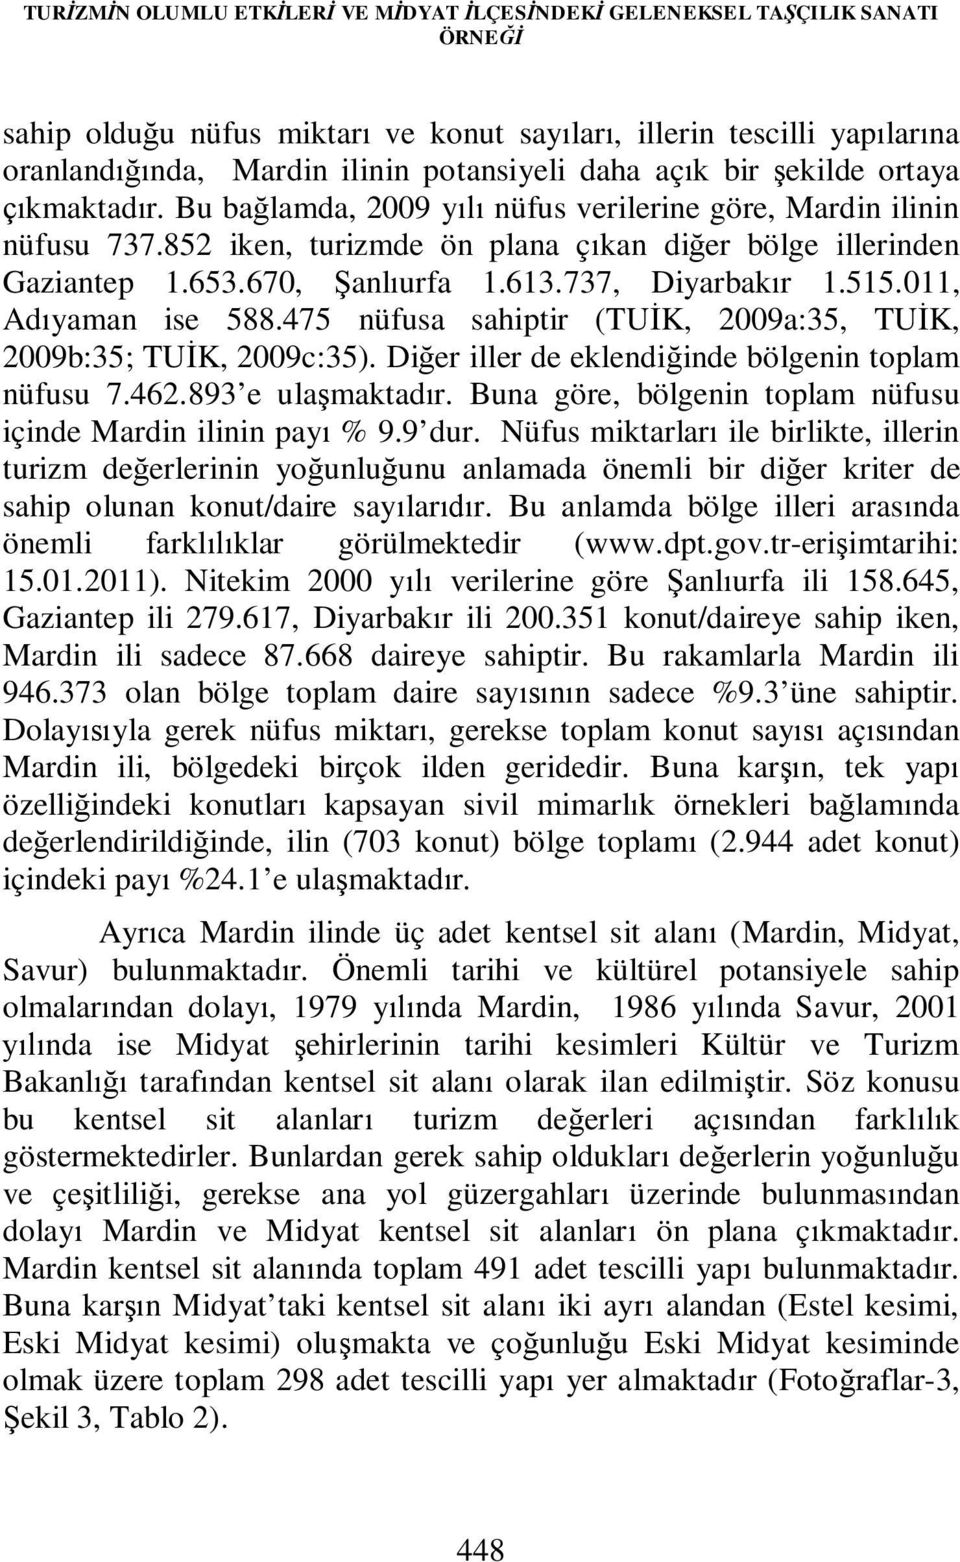 670, Şanlıurfa 1.613.737, Diyarbakır 1.515.011, Adıyaman ise 588.475 nüfusa sahiptir (TUİK, 2009a:35, TUİK, 2009b:35; TUİK, 2009c:35). Diğer iller de eklendiğinde bölgenin toplam nüfusu 7.462.